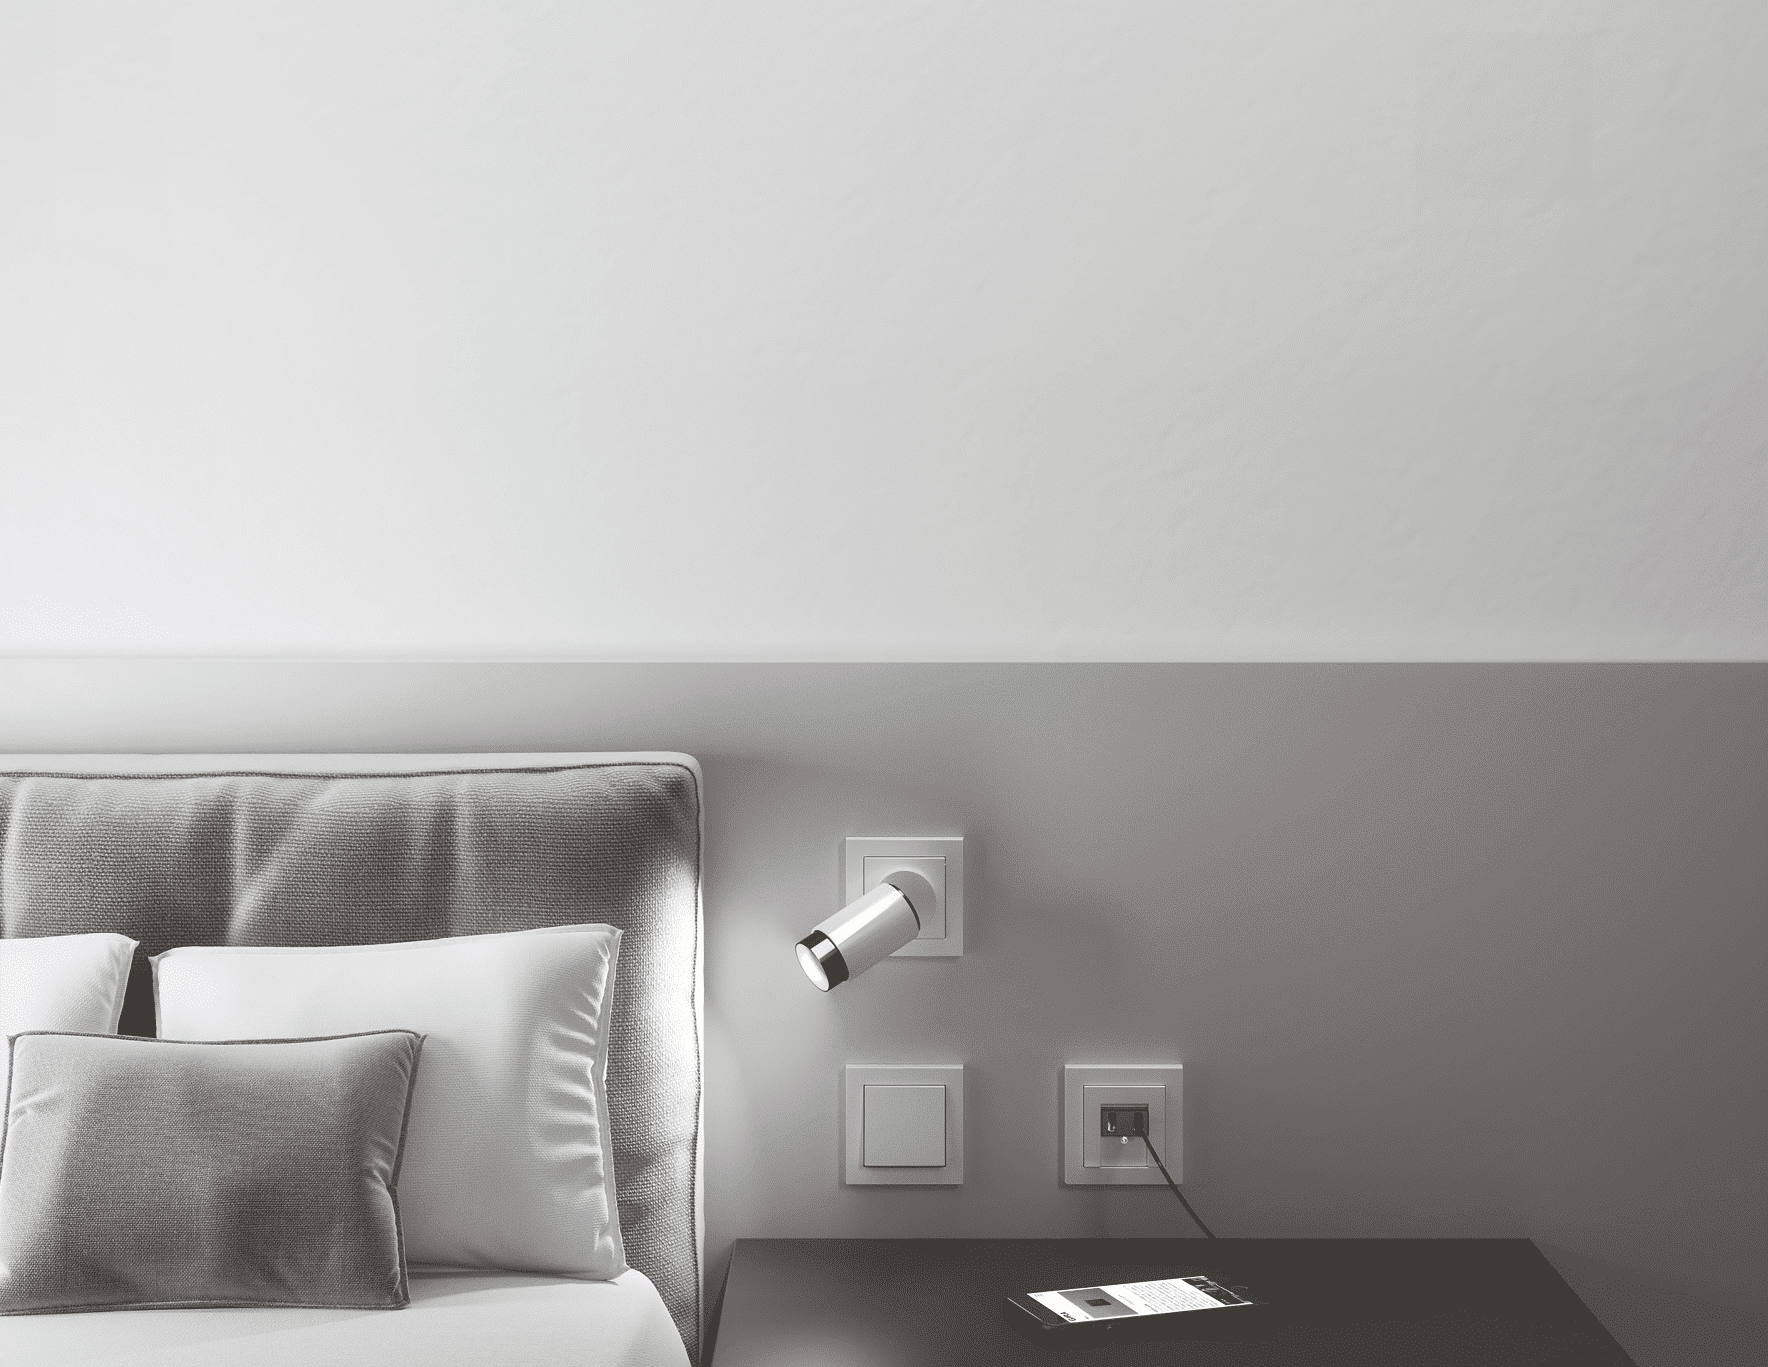 Schlafzimmer mit Nachtlicht, Lichtschalter und einer Handy-Ladestation mit USB-Anschluss der Firma Gira.